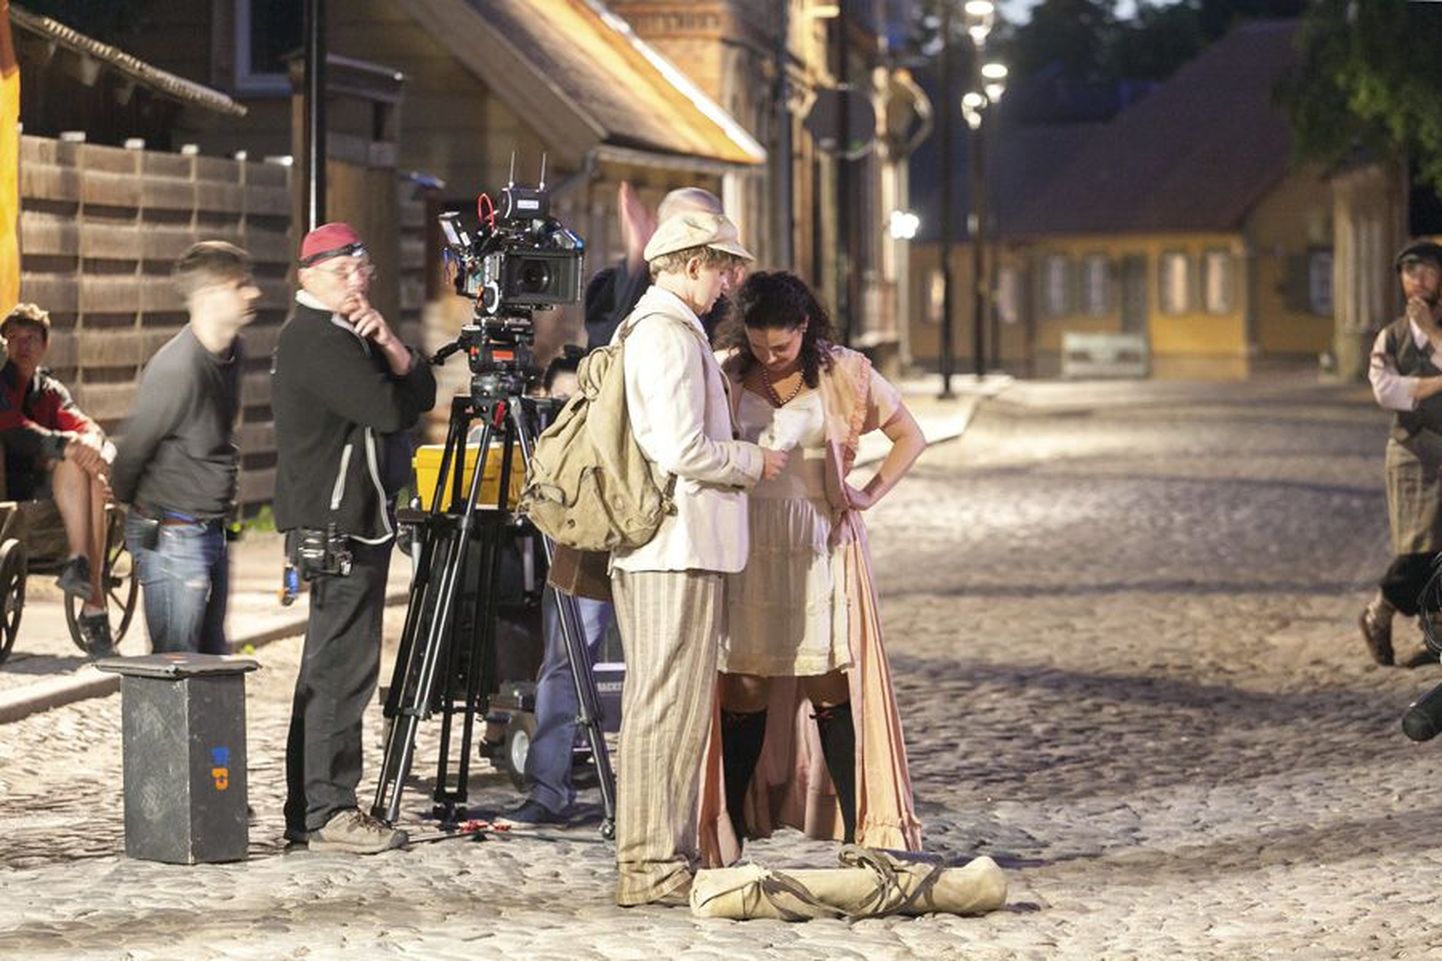 Filmi meeskond askeldas Viljandi vanalinnas pühapäeva hommikul kella kolmeni. Kandvates rollides olid Ott Sepp ja Märt Avandi.